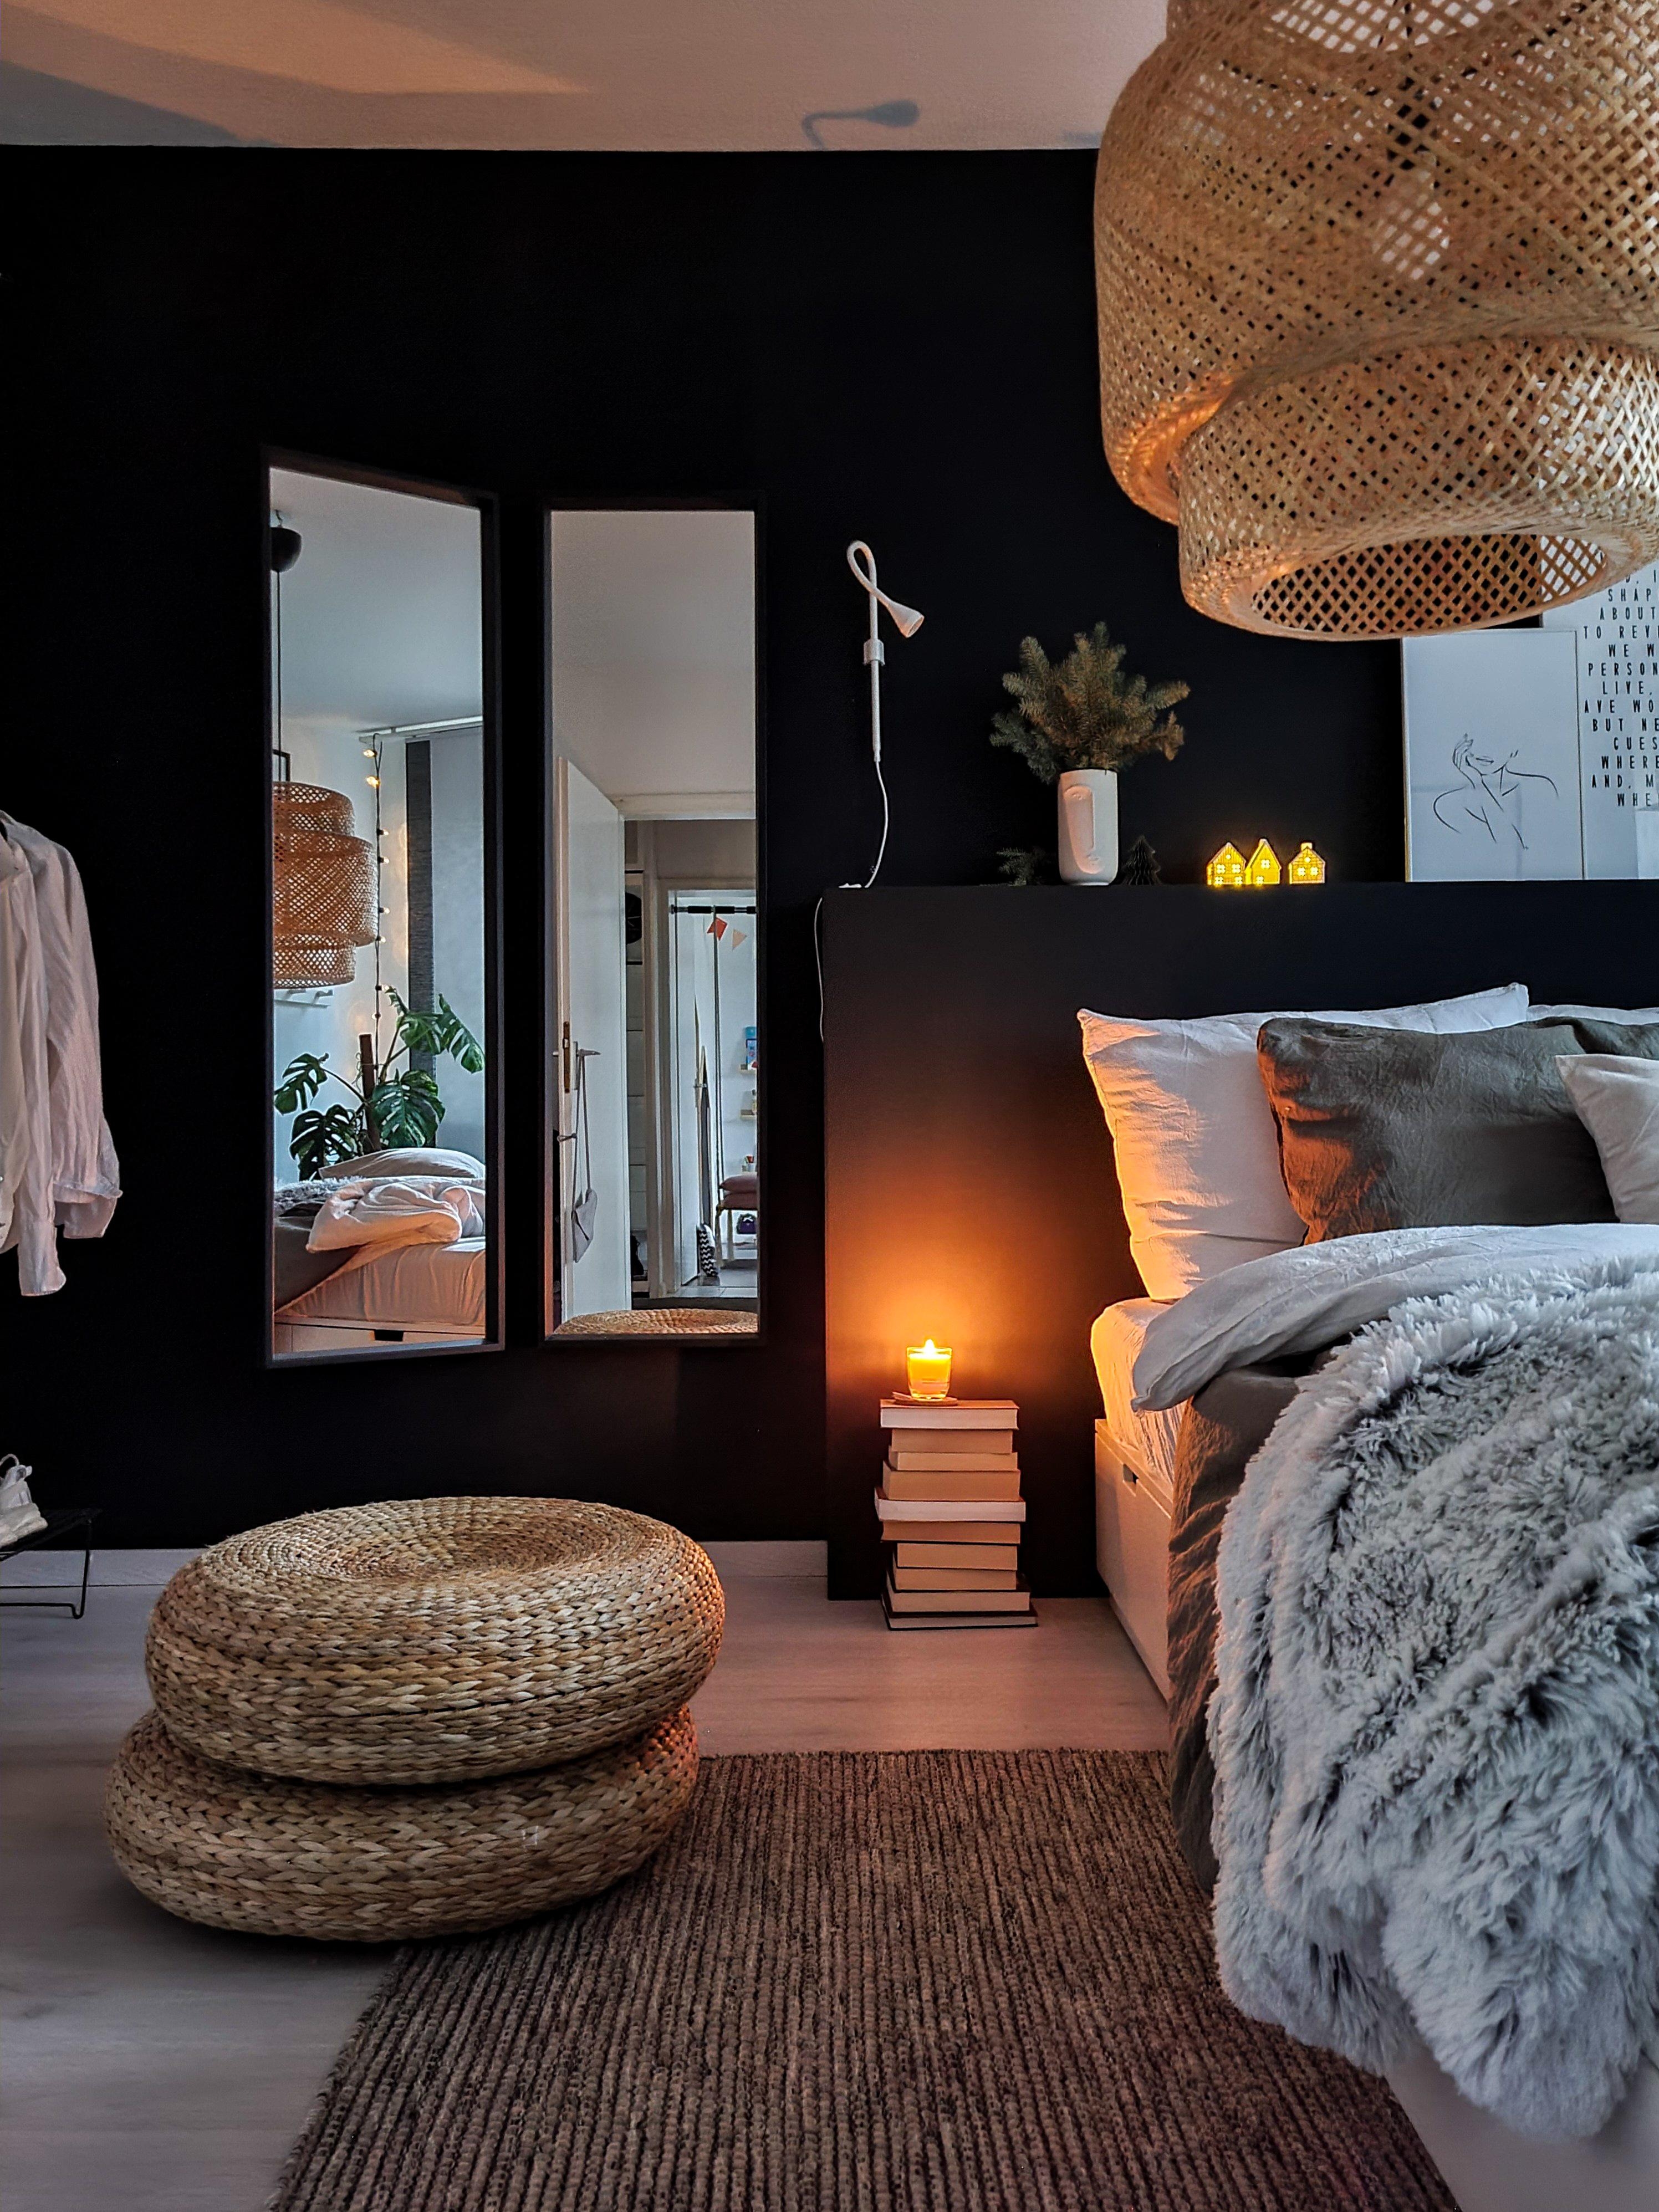 Cozyness ✨️
#bedroom #kerzenlicht #kerzenschein #lichthäuser #hygge #spiegel #blackwall